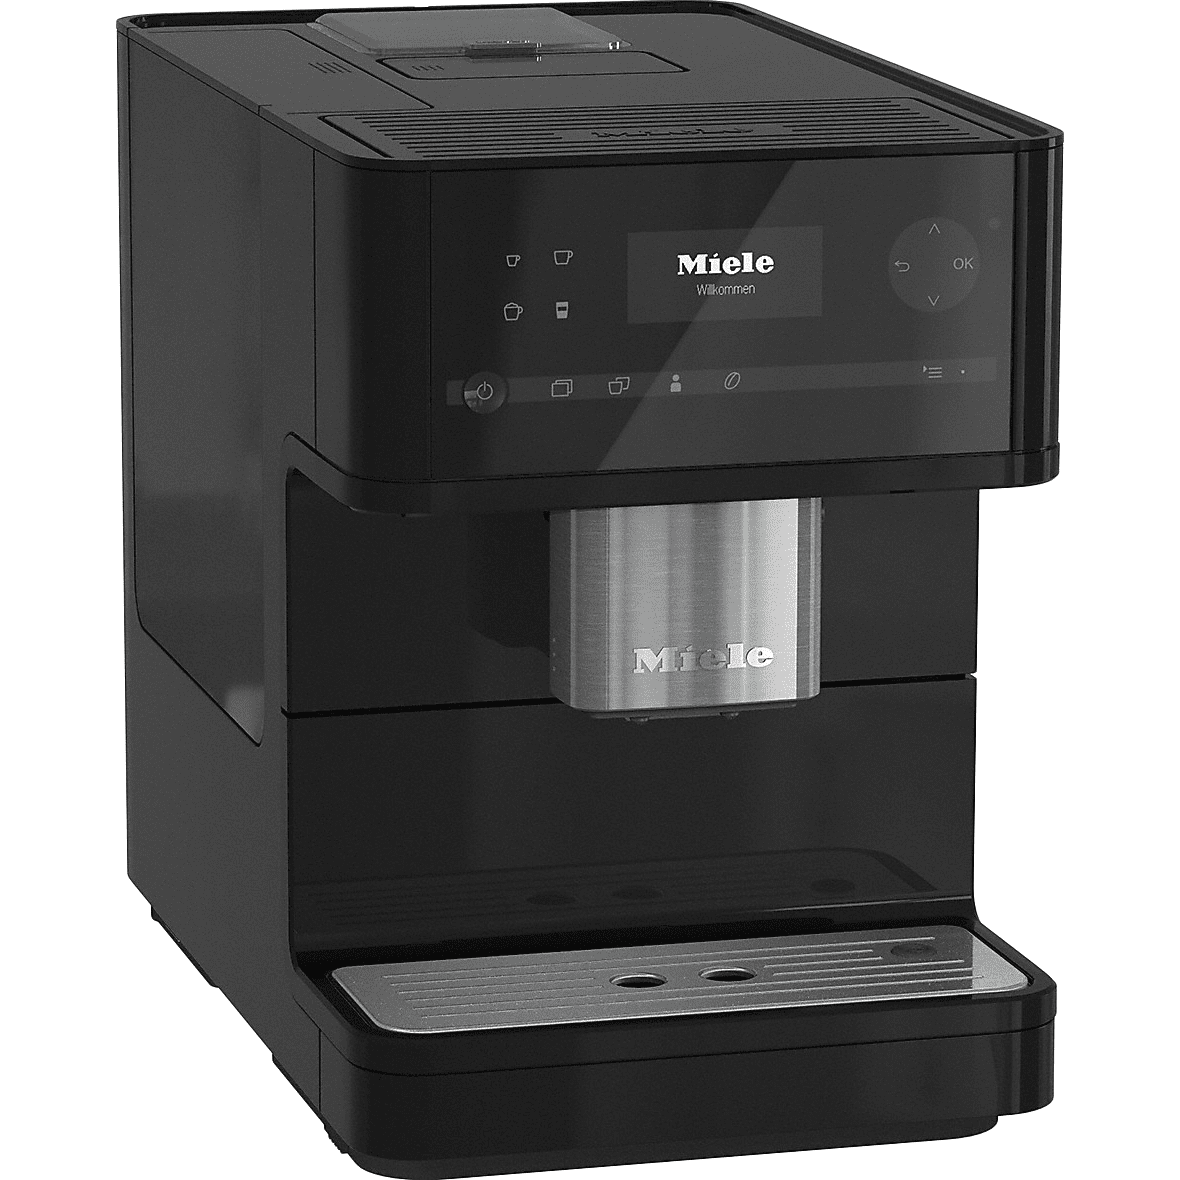 Miele Cm6150 Countertop Espresso Machine